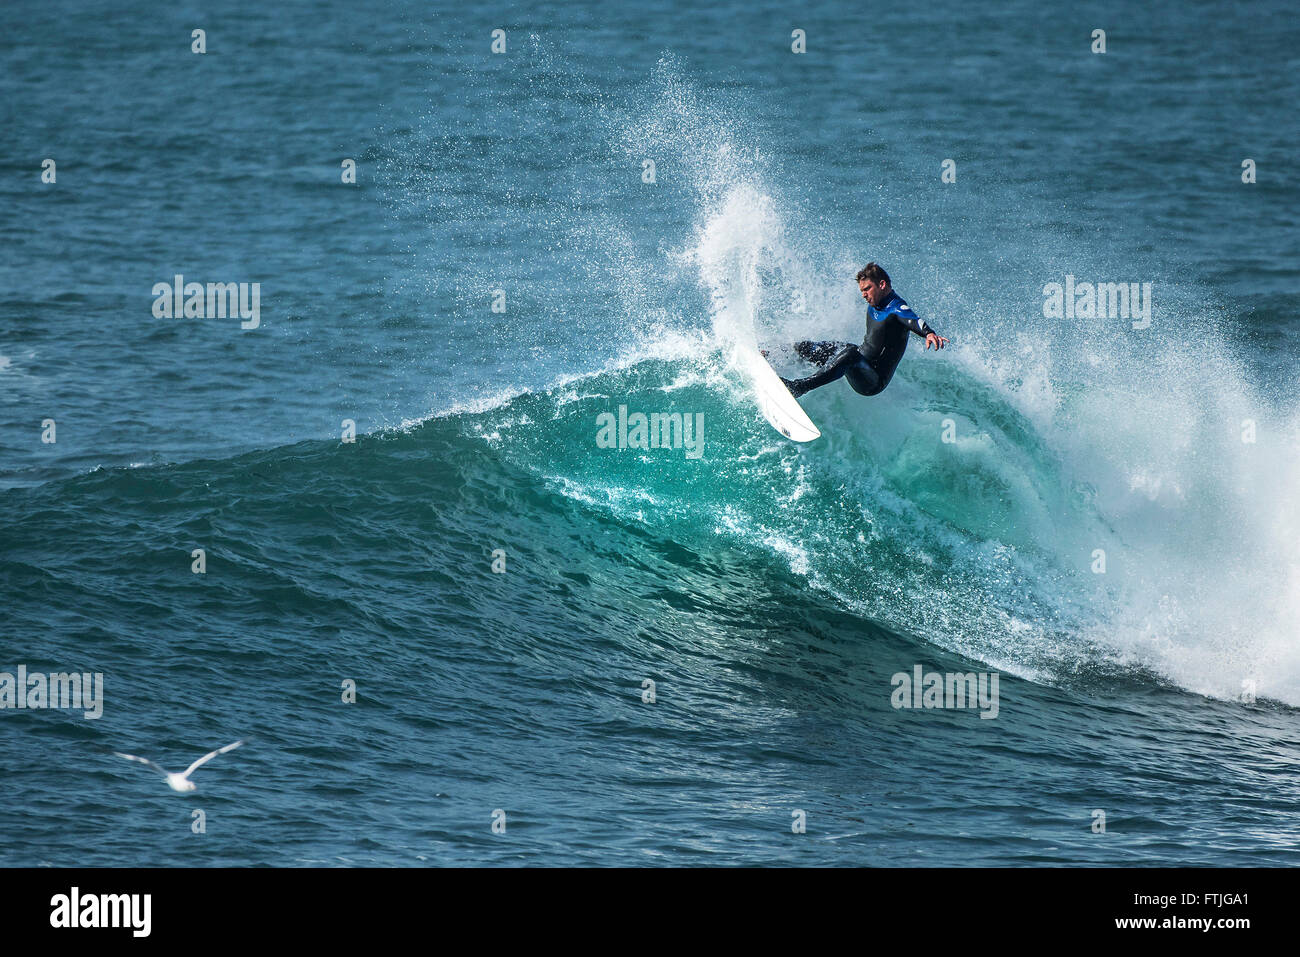 Ein Surfer in einer spektakulären Aktion einer Welle in Camborne, Cornwall, England. Stockfoto